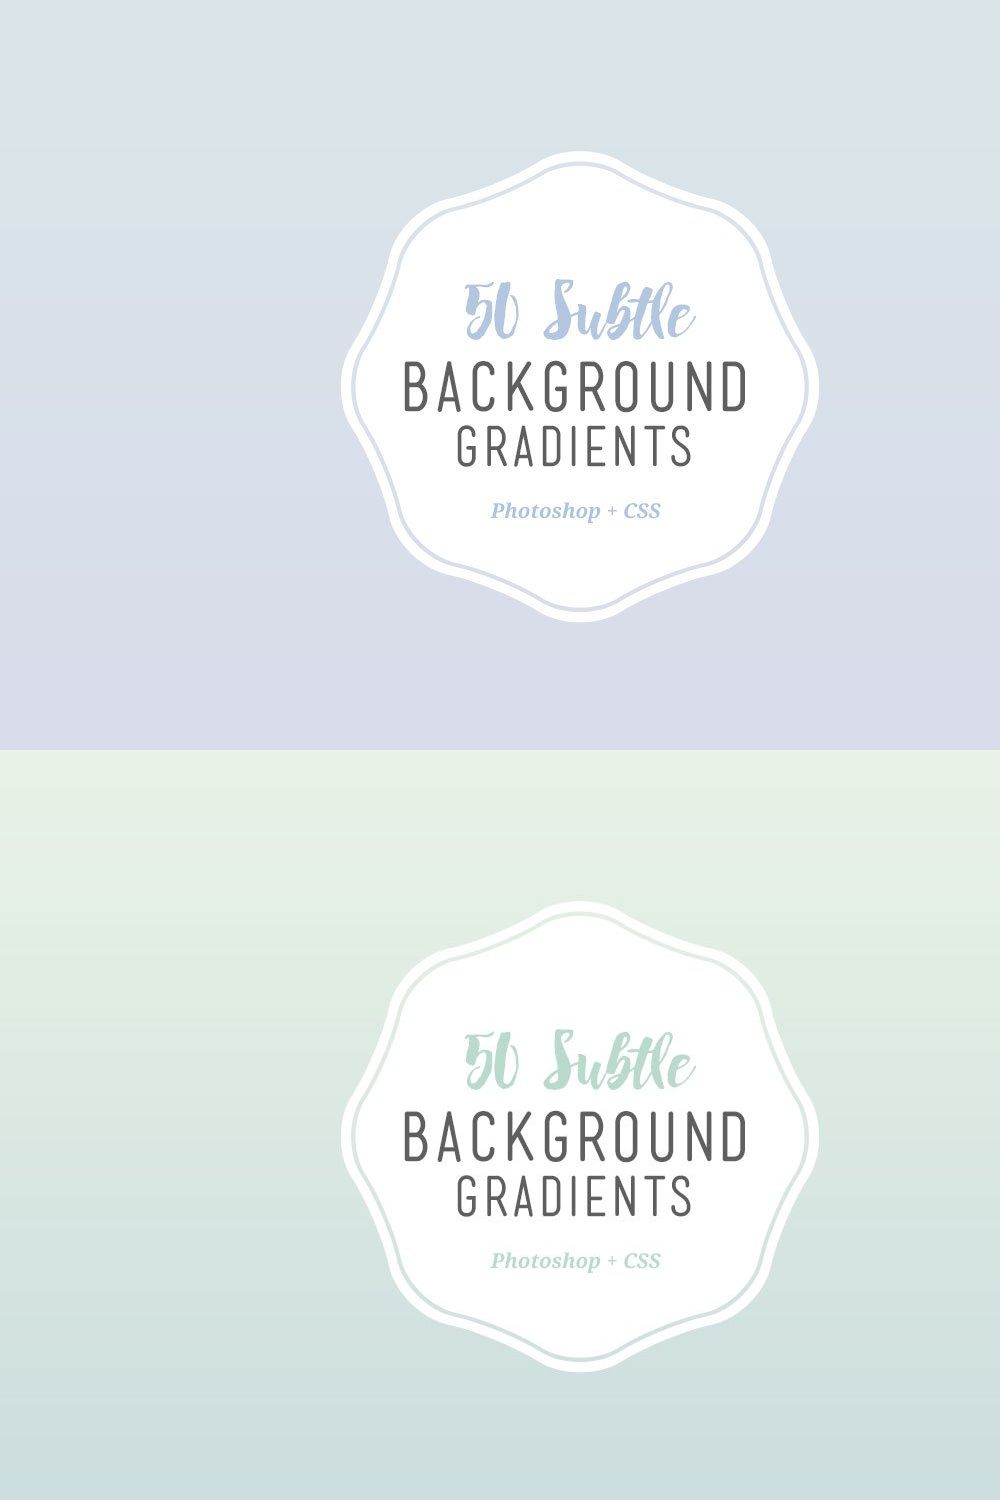 50 Subtle Background Gradients (CSS) pinterest preview image.